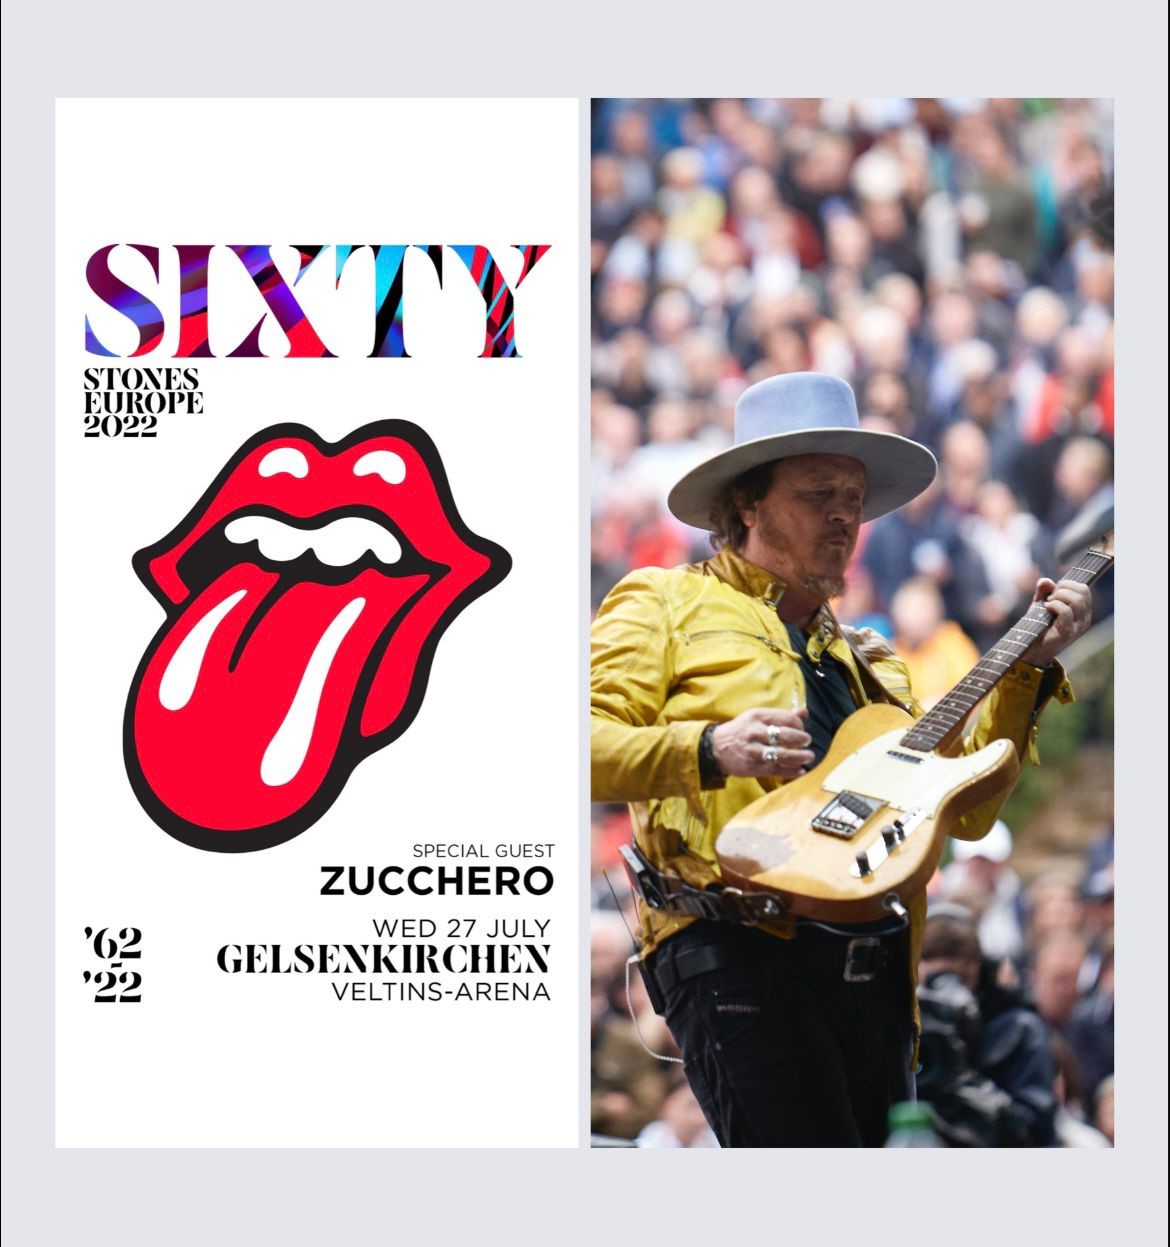 Che accoppiata, Zucchero aprirà il concerto dei Rolling Stones del 27 luglio in Germania